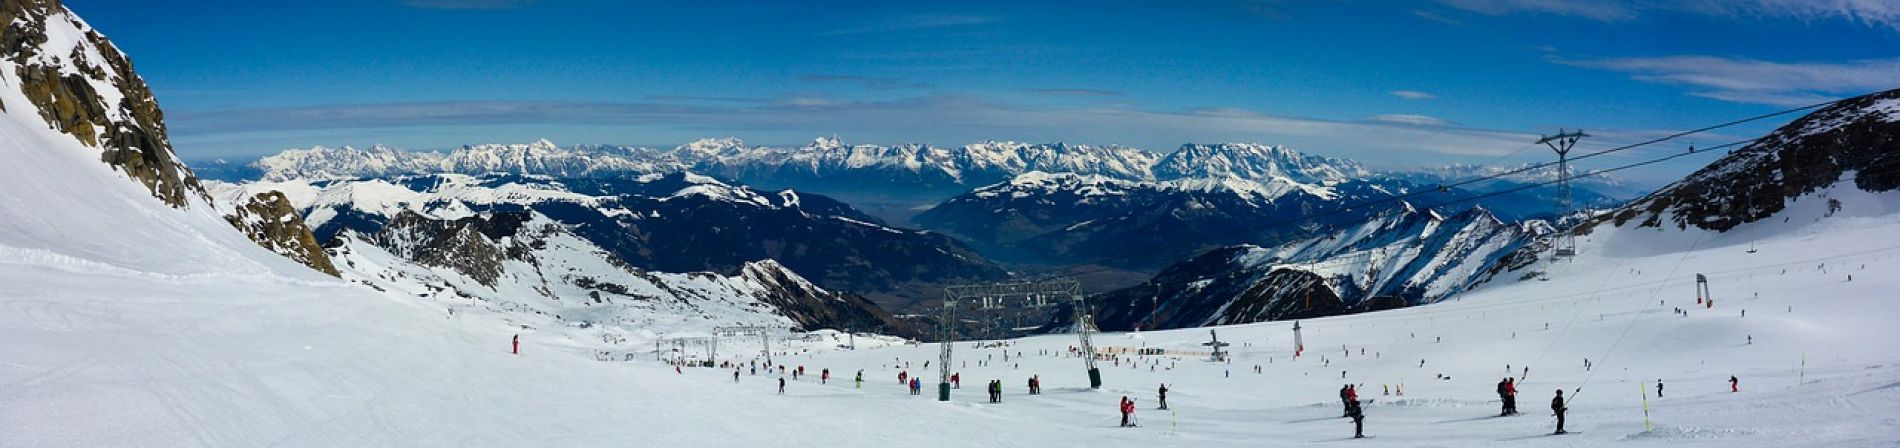 Family ski holiday to Austria